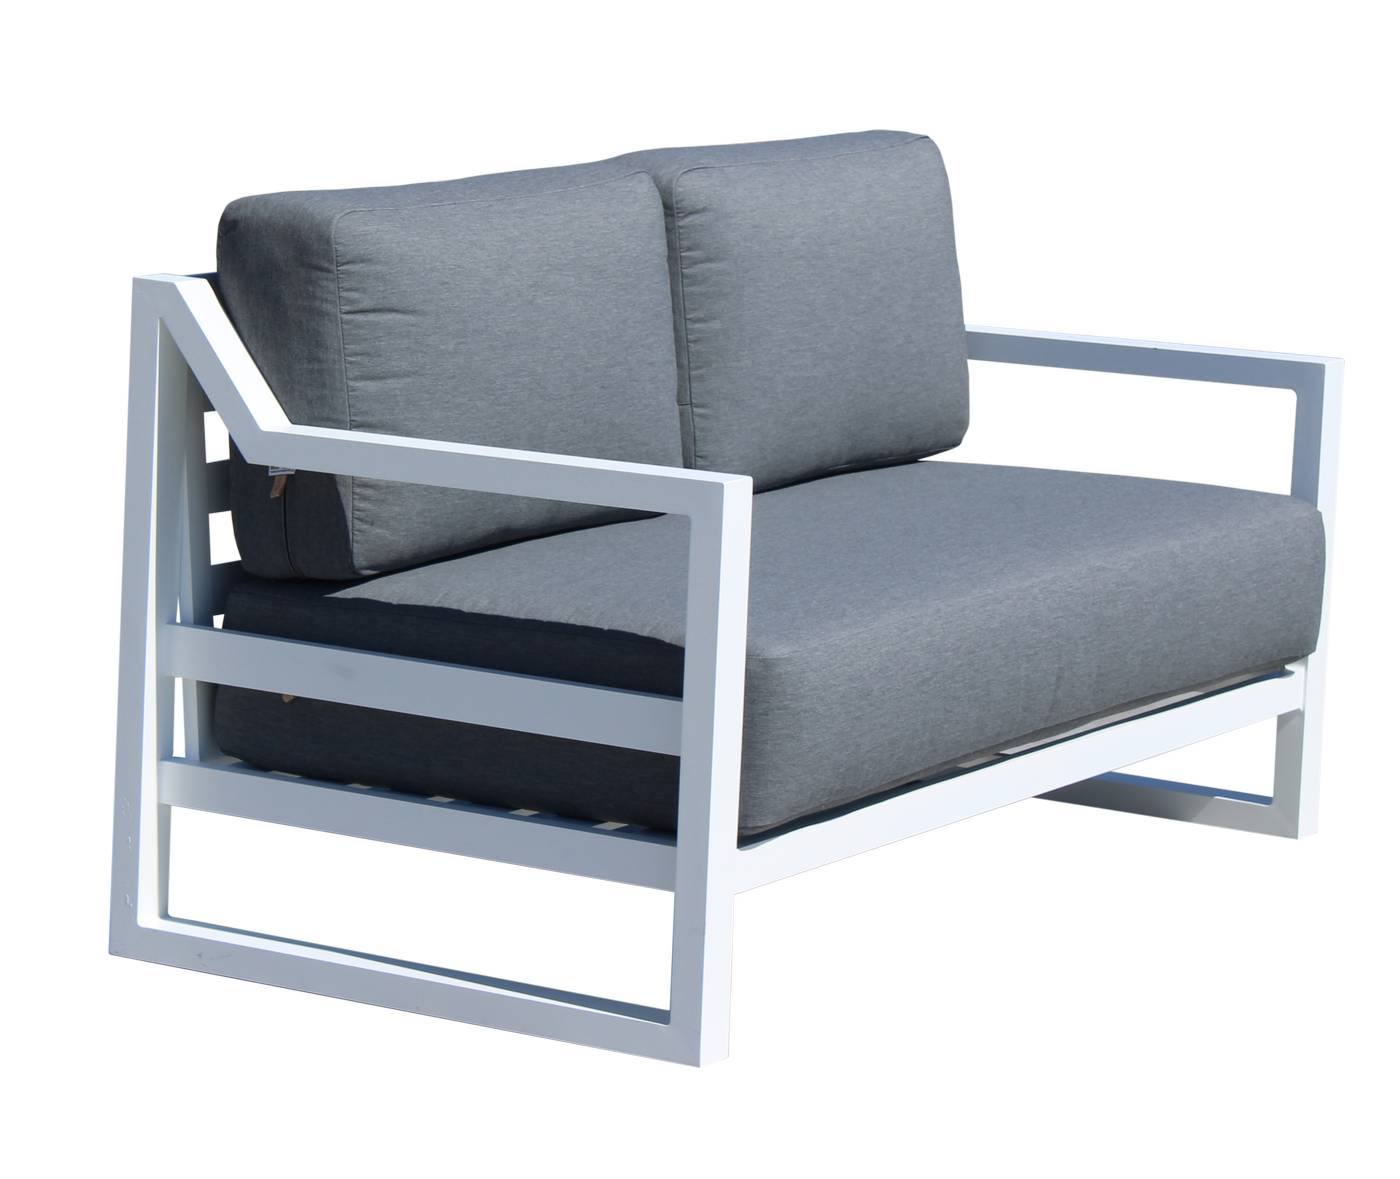 Lujoso sofá de 2 plazas con cojines  desenfundables. Robusta estructura aluminio color blanco, antracita o champagne.